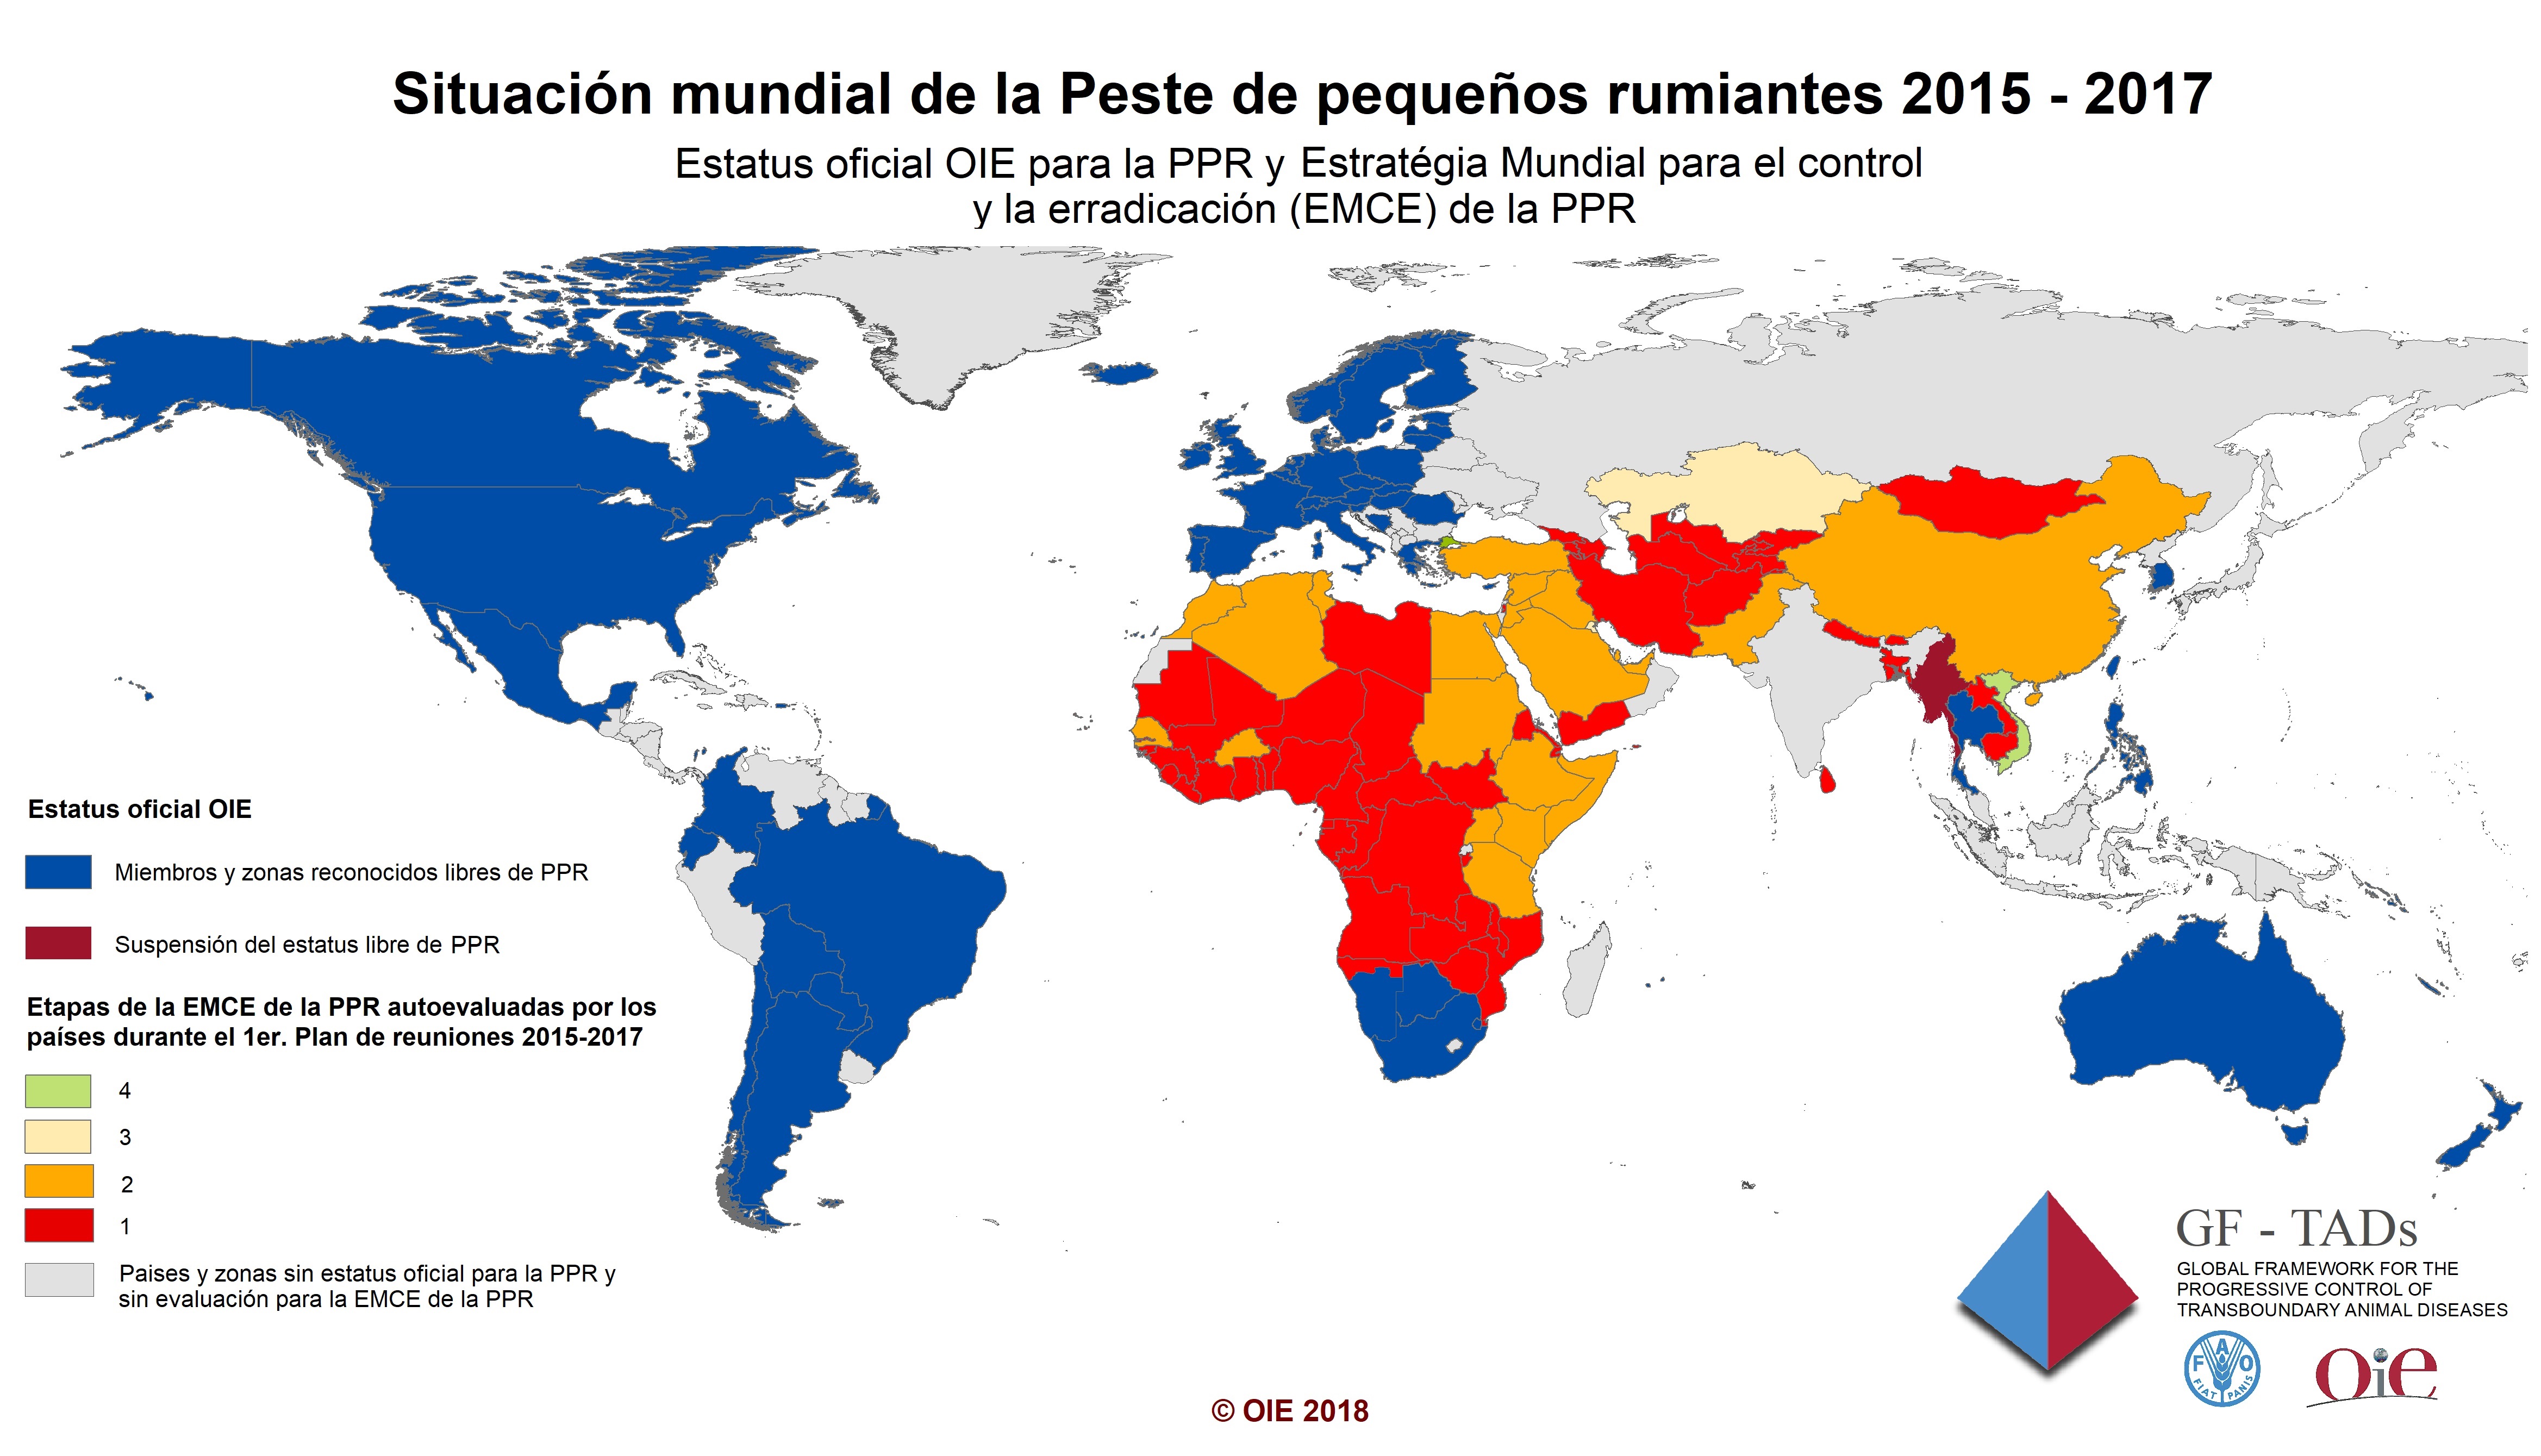 Mapa situación mundial de la peste de pequeños rumiantes 2015-2017